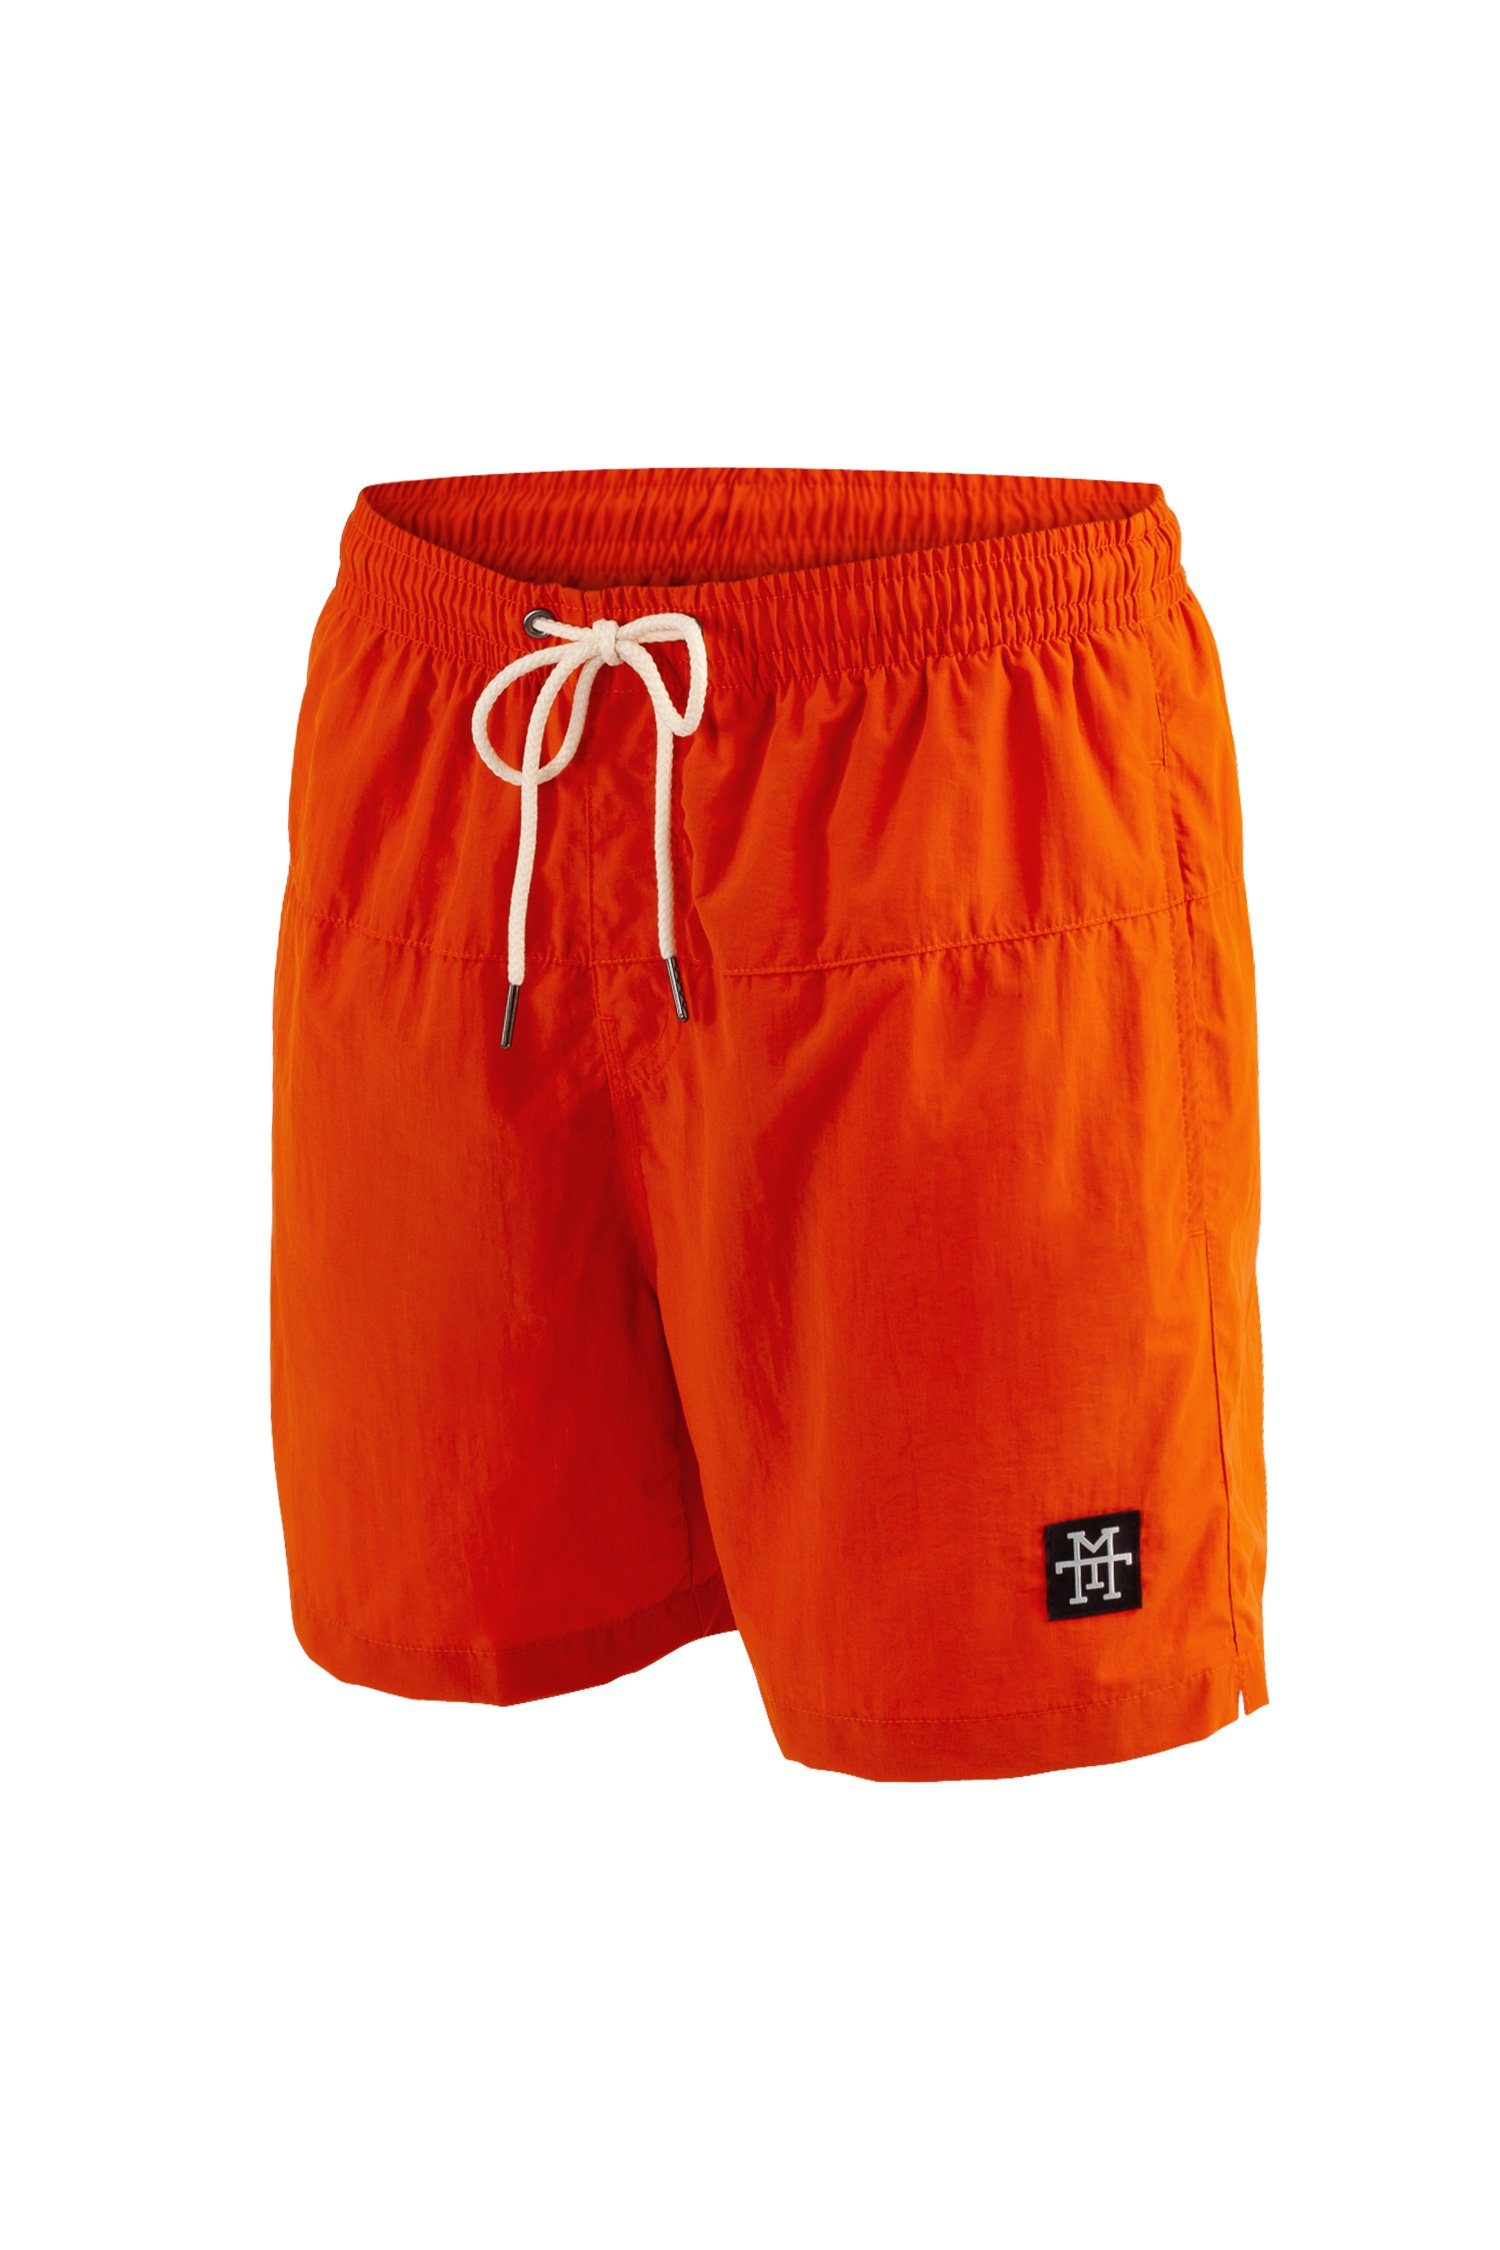 Manufaktur13 Badeshorts Shorts Badehosen Tangerine Swim - schnelltrocknend